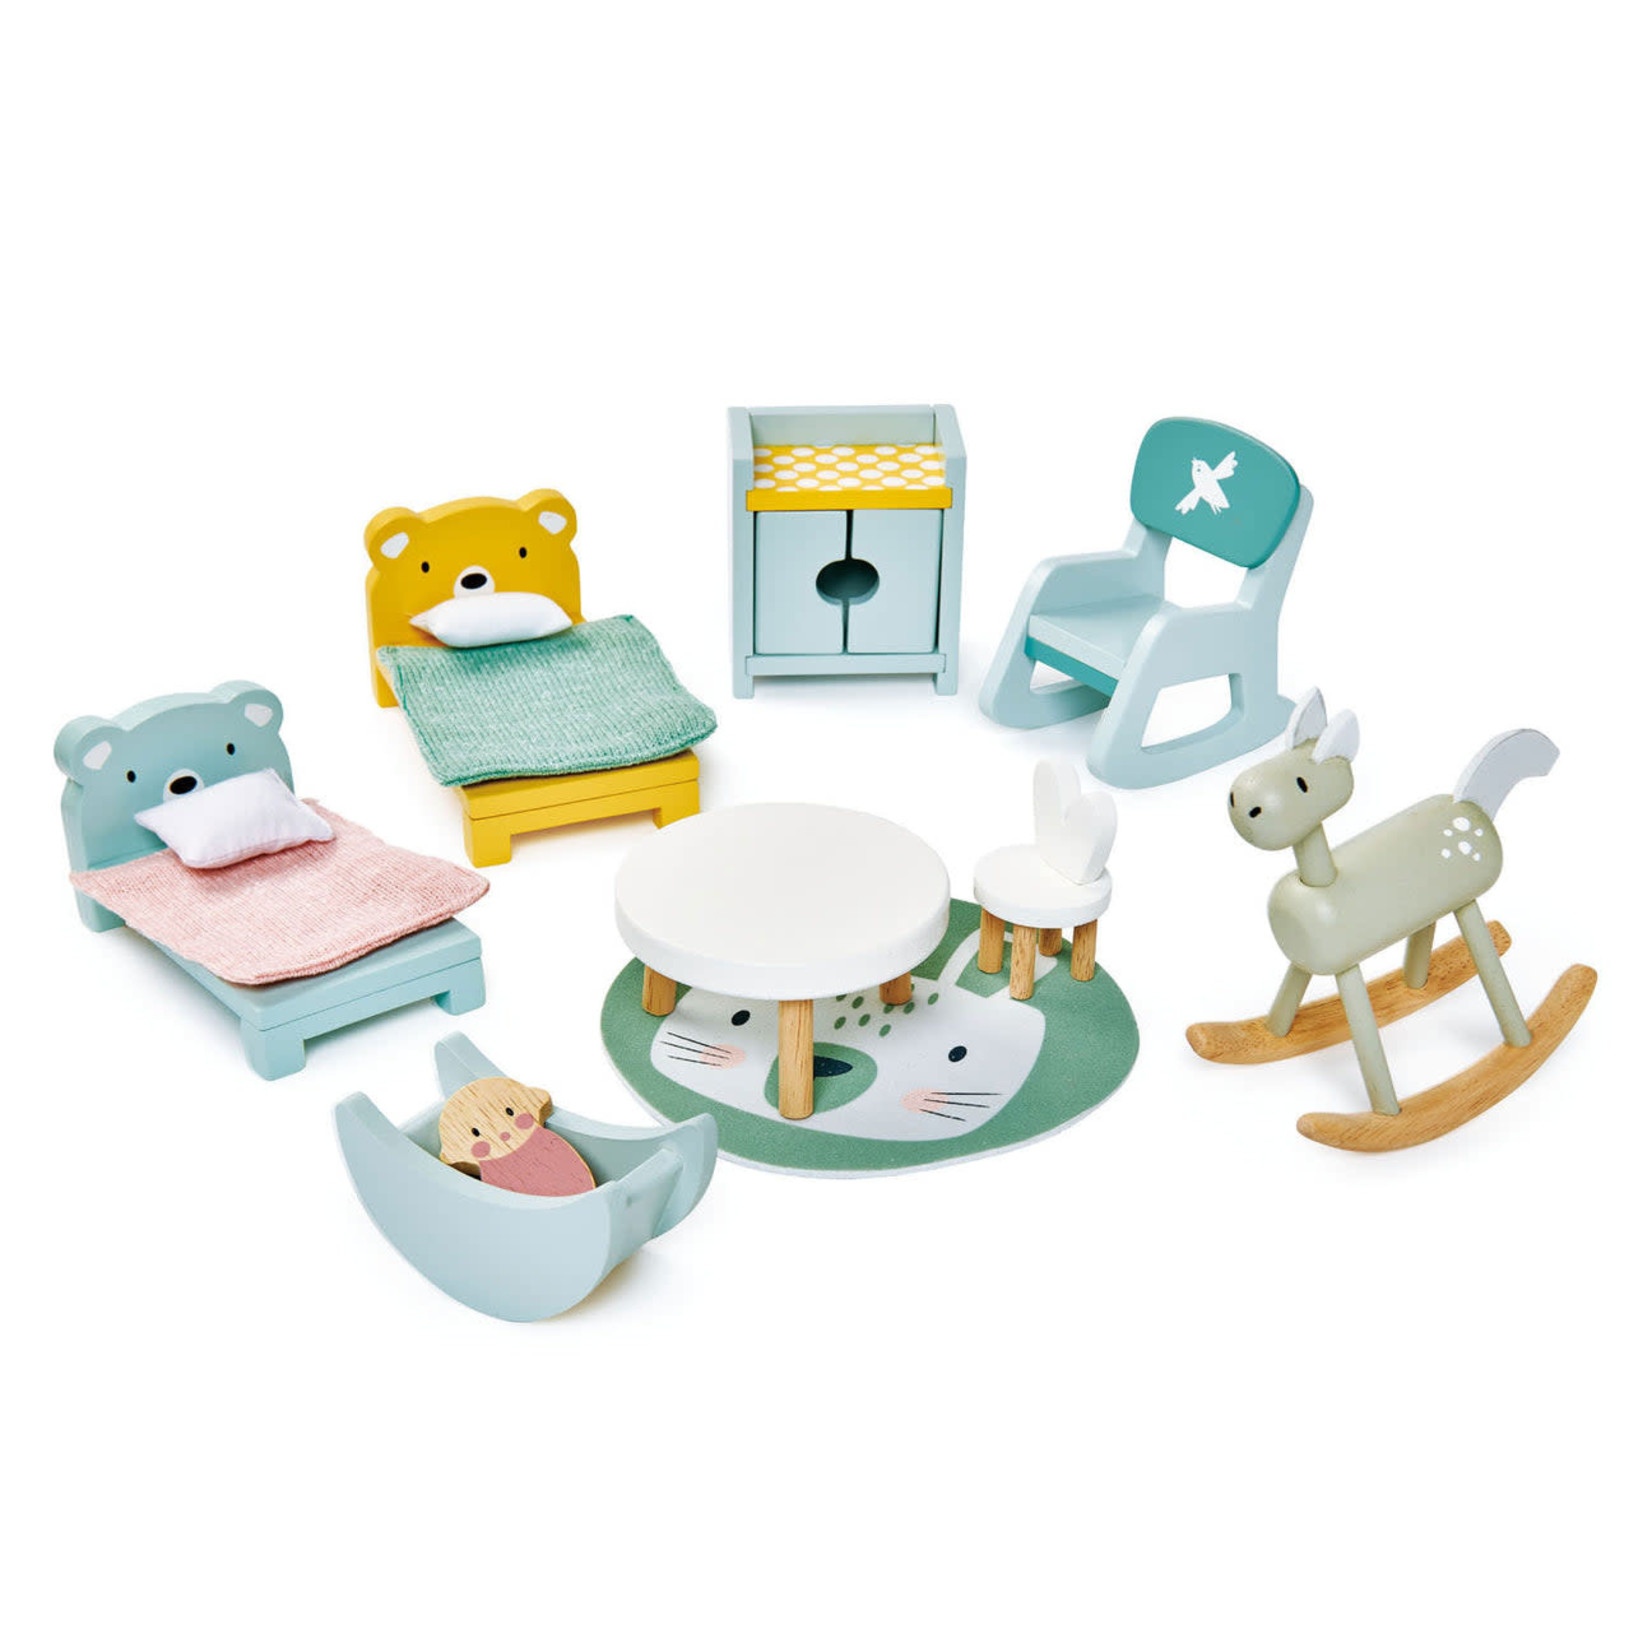 Tender Leaf Toys Tender Leaf Toys | Dolls House Children's Room Furniture